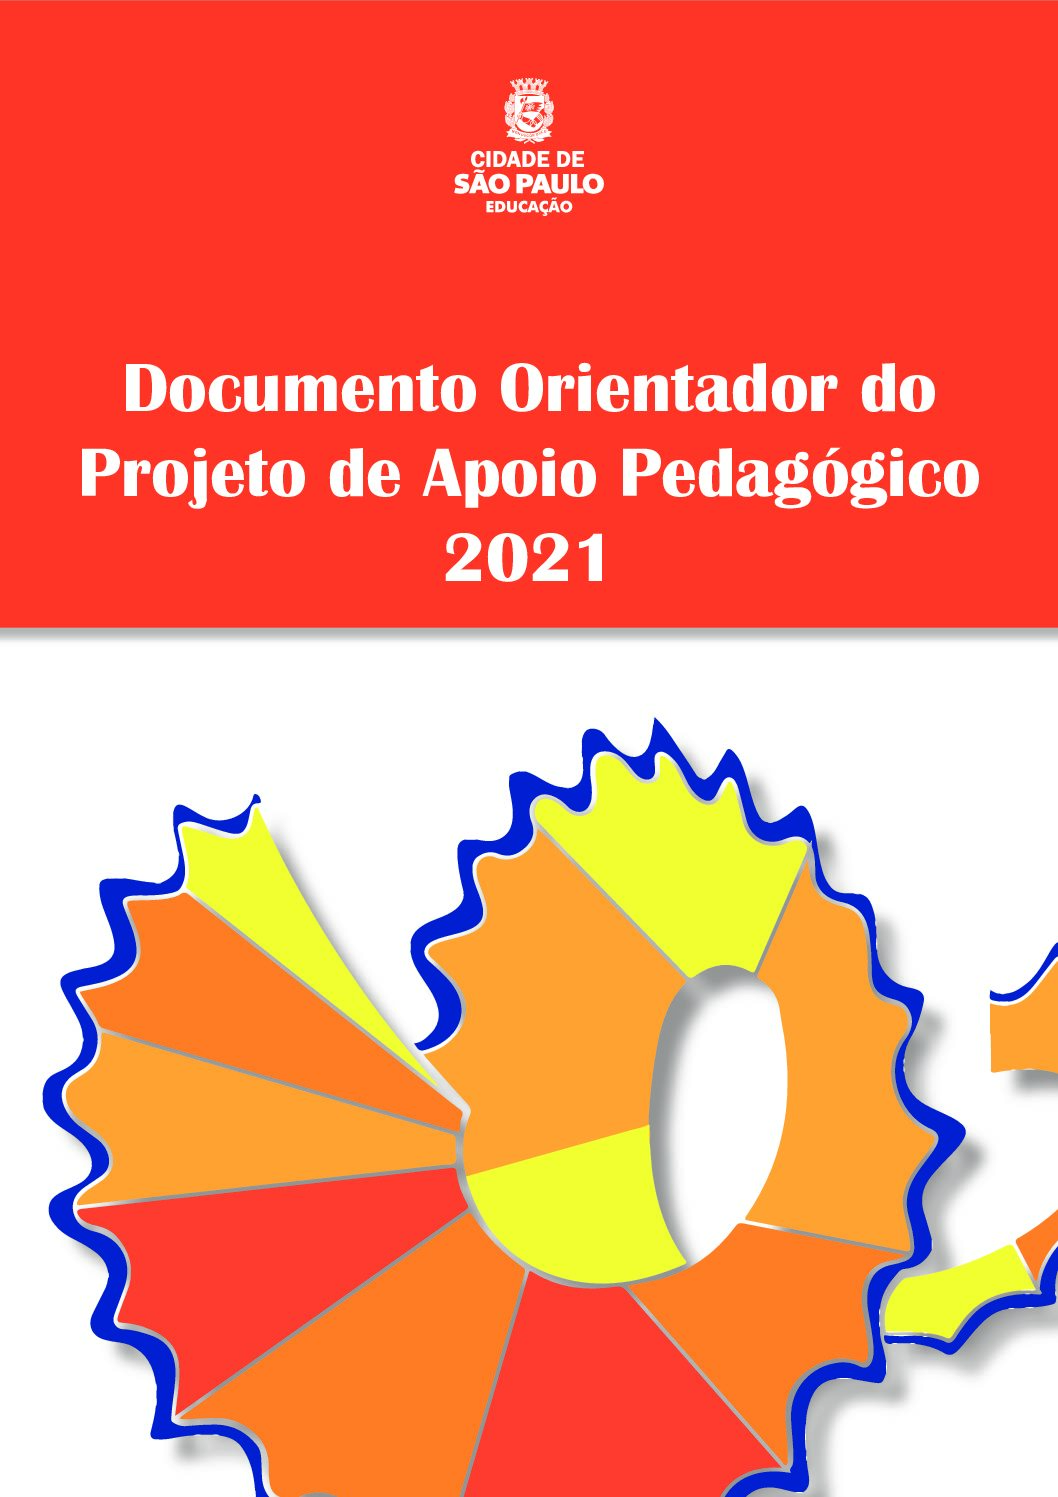 Documento com orientações sobre o Projeto de Apoio Pedagógico da Rede Municipal de Ensino de São Paulo no ano de 2021.